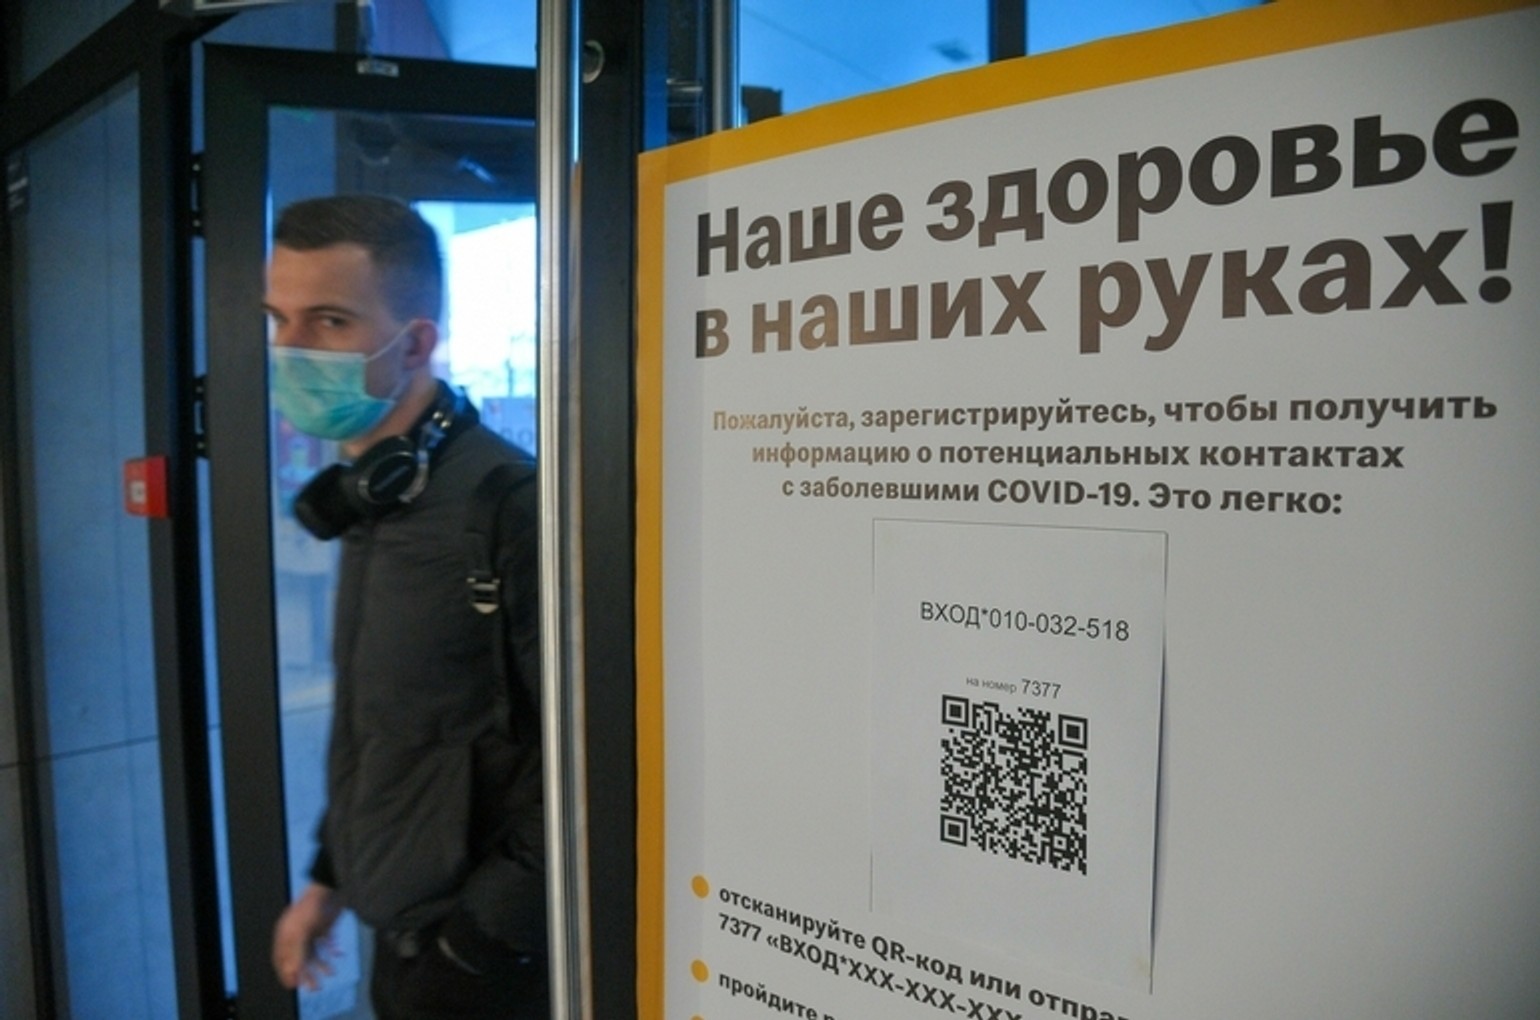 Скористатися антикризовими заходами підтримки в Москві зможуть тільки кафе, які вакцинують своїх співробітників